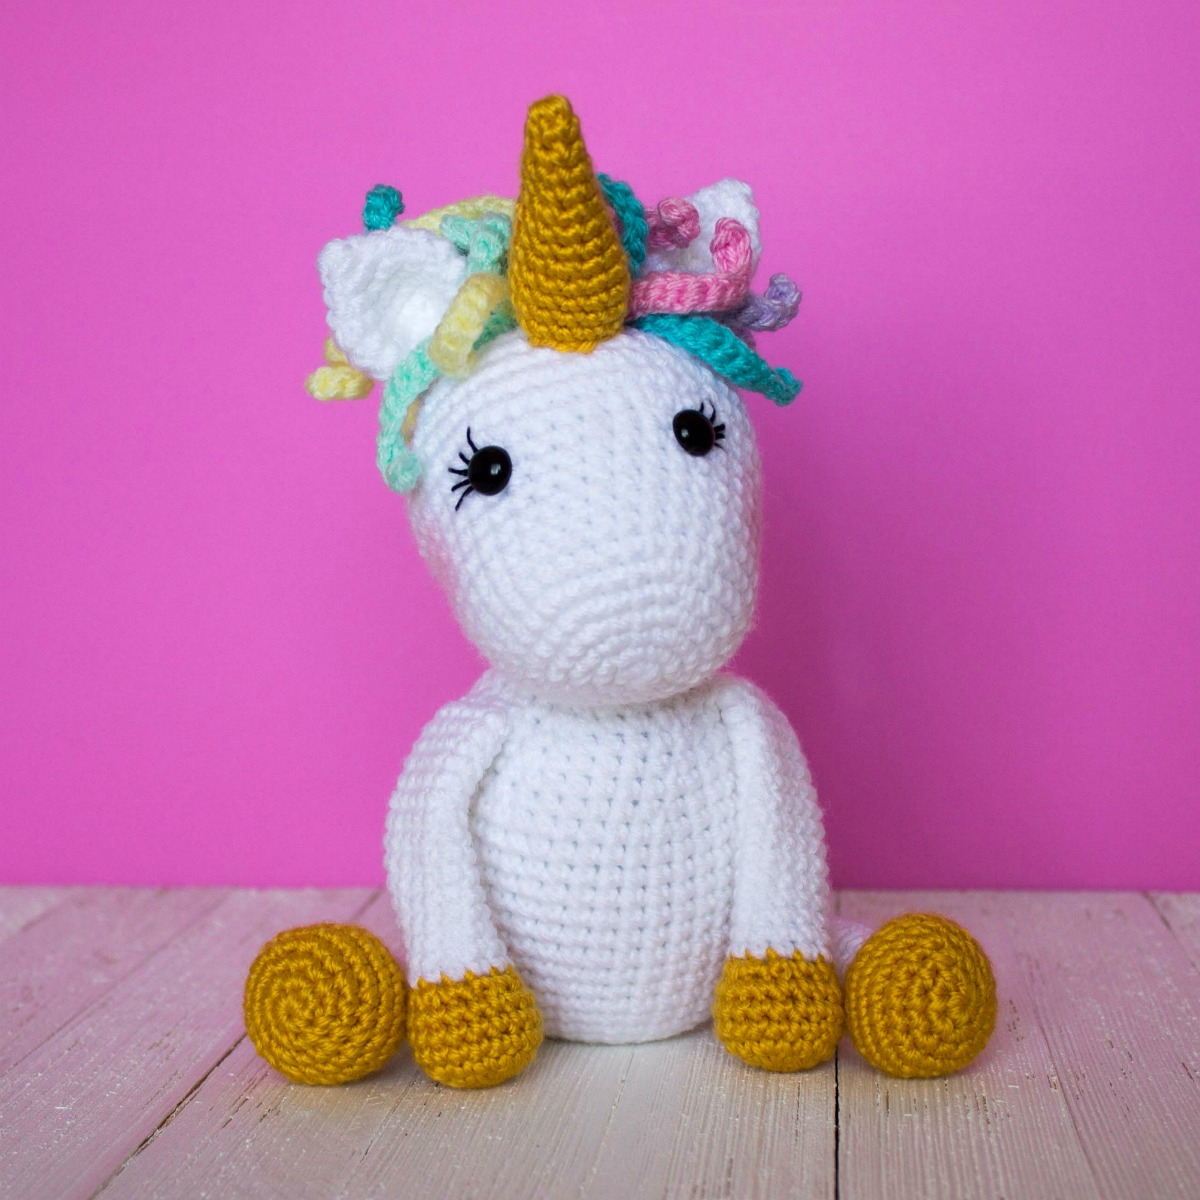 Unicorn Crochet Pattern Free Free Crochet Unicorn Pattern Thefriendlyredfox